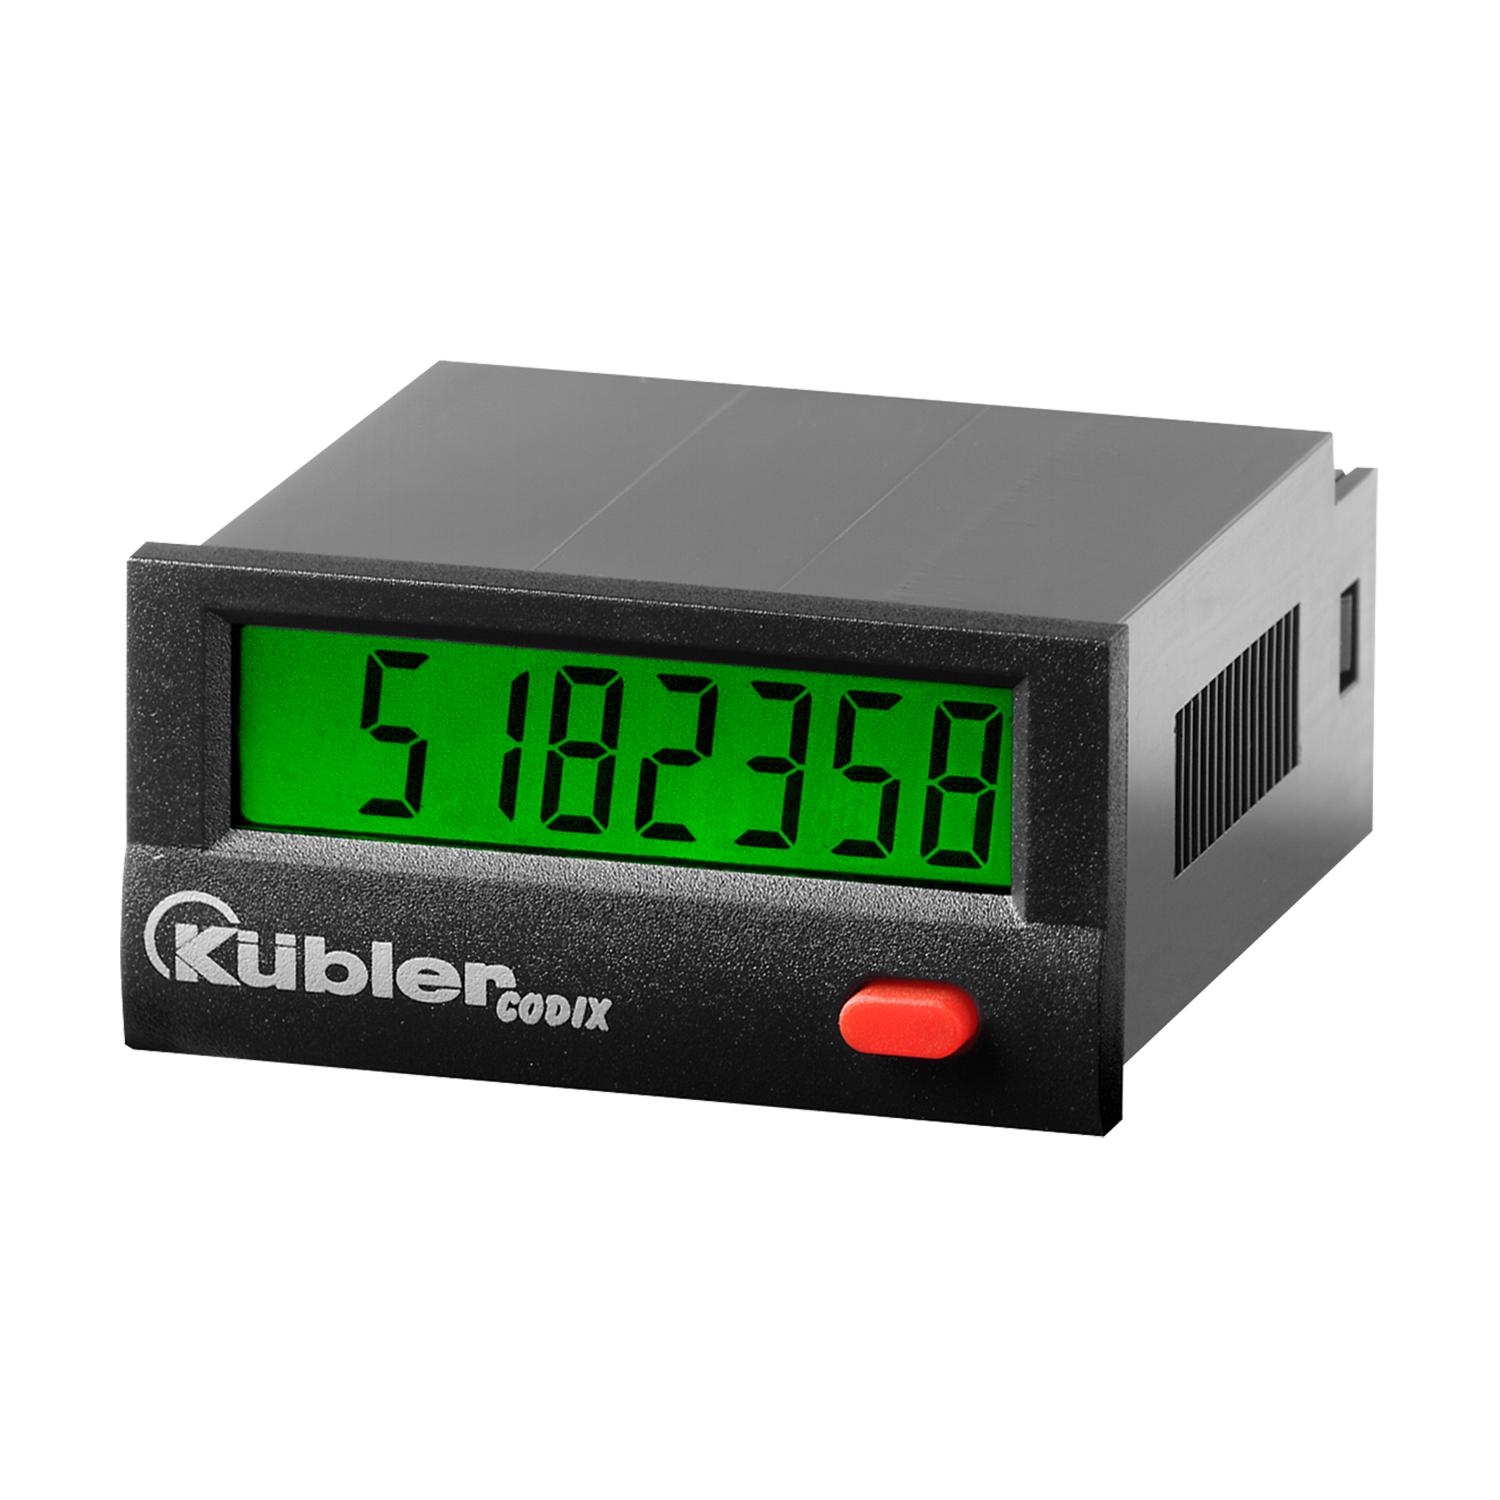 6.560.010.000, Compteur Kübler CODIX 560 Tours par minutes, Minutes 90→260  V c.a. LED 6 digits